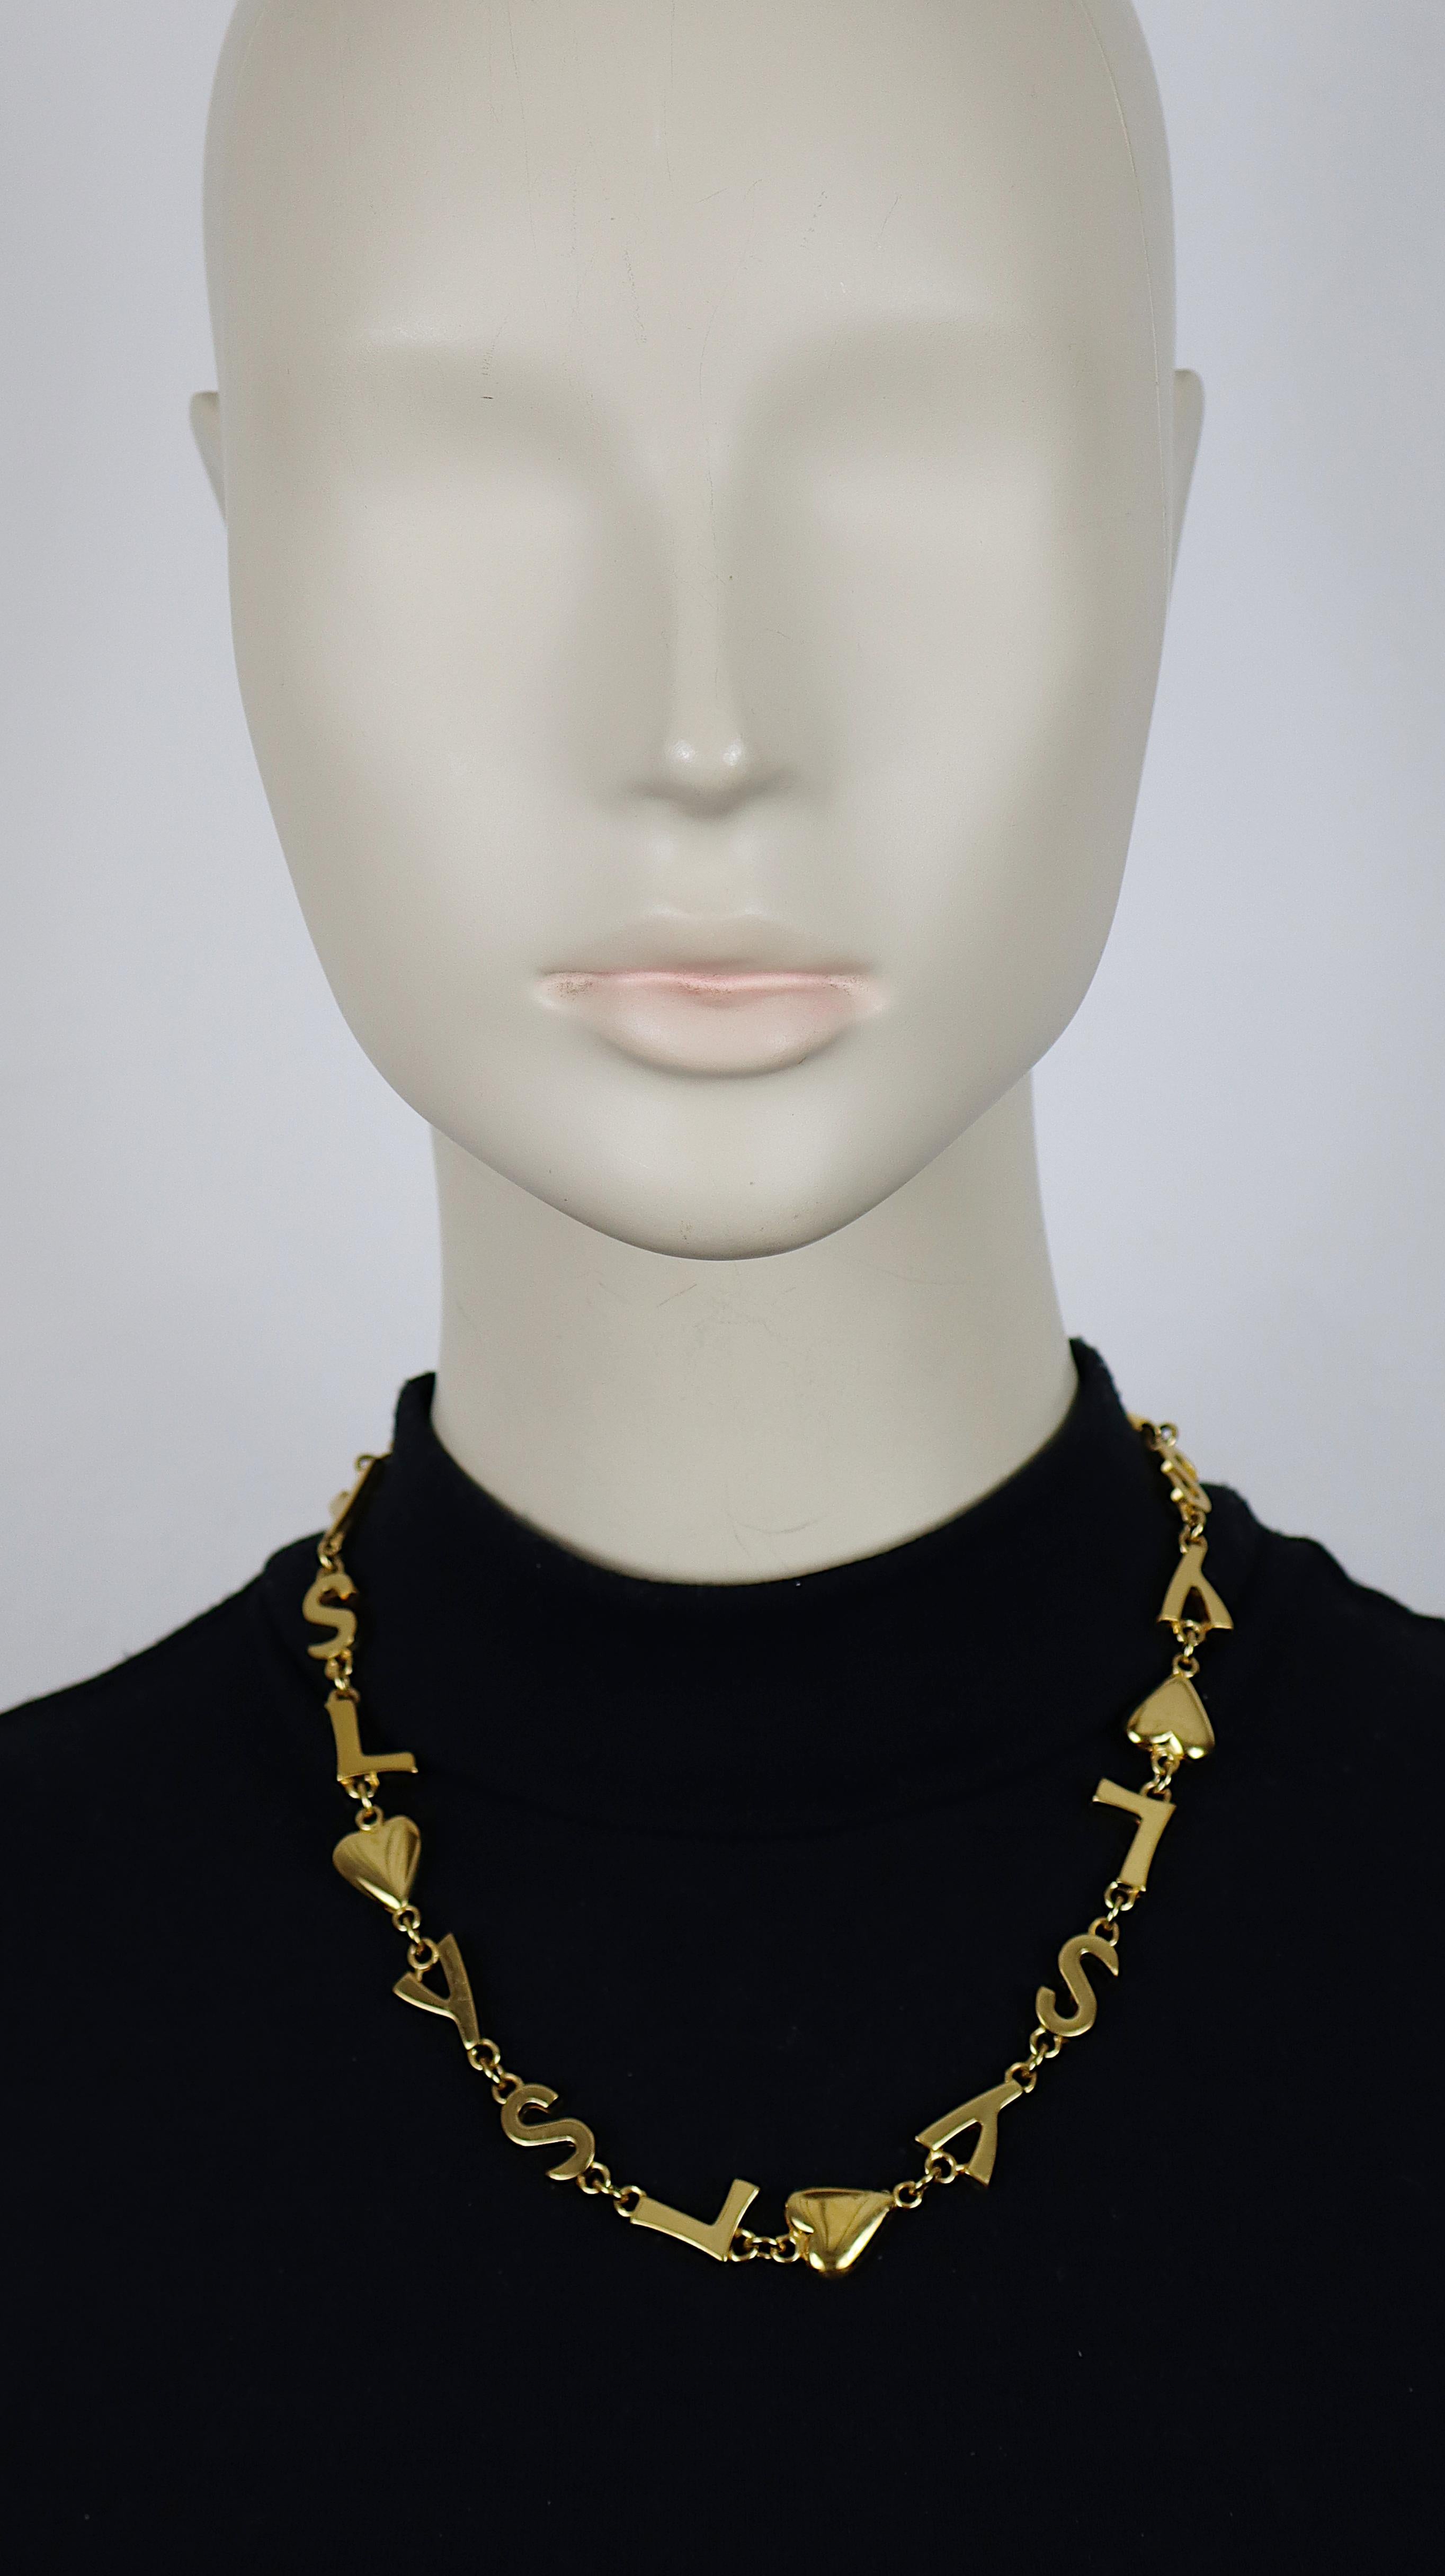 YVES SAINT LAURENT Vintage-Halskette in Goldton mit ikonischen YSL-Initialen, Herzen und Sternen als Glieder.

T-Bar-Verschluss und Kippschalter mit Herzchen.

Kursiver Schriftzug YVES SAINT LAURENT, geprägt auf den Knöpfen mit